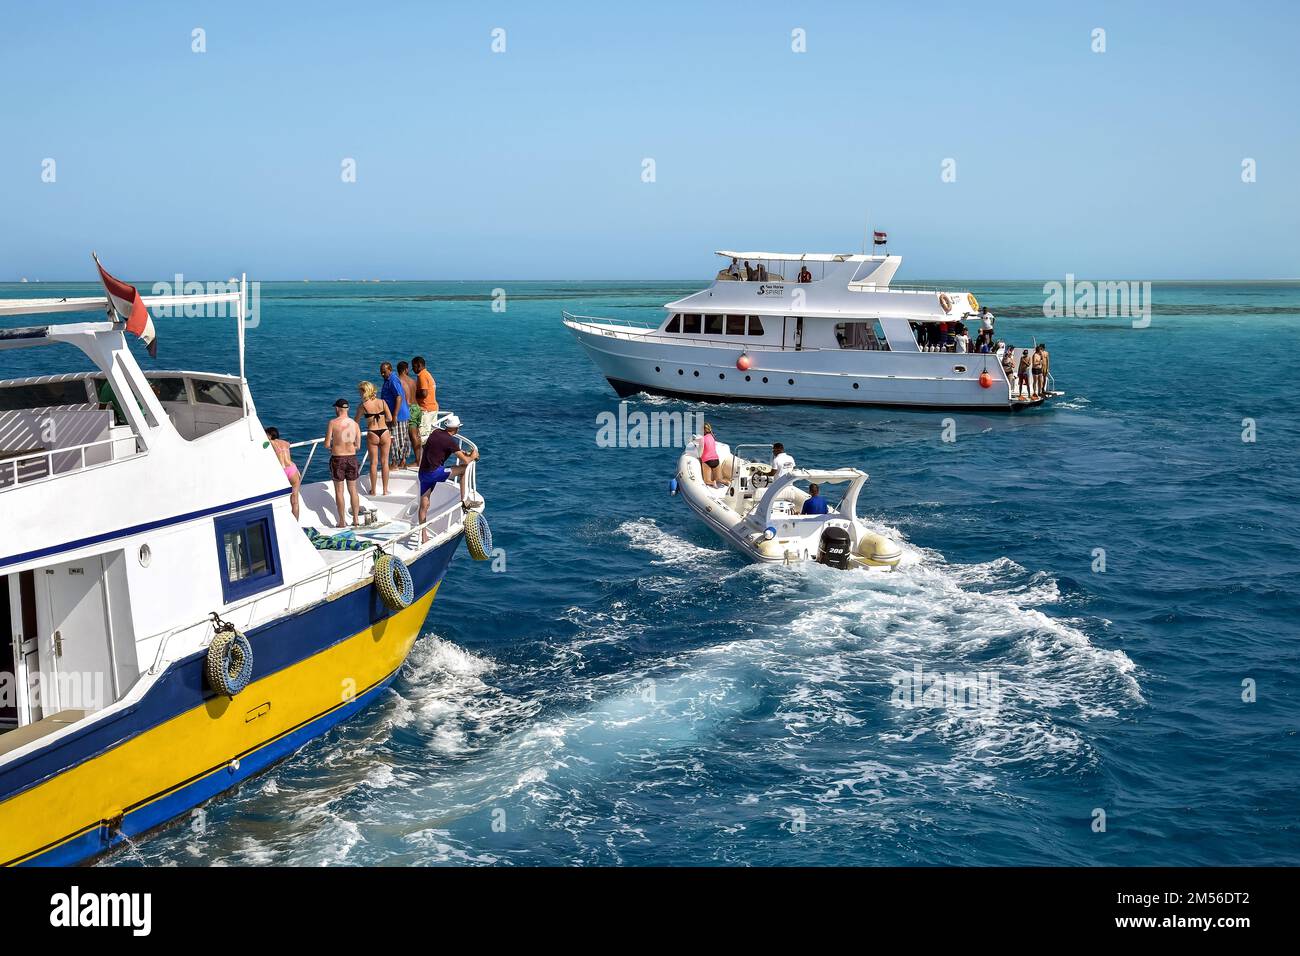 Abenteuer und Reisen. Touristen entspannen sich auf der Yacht und Motorbootfahrt. Aktive Erholung am Roten Meer, Resort, Urlaub, Urlaub. Hurghada, Ägypten - Oktober Stockfoto